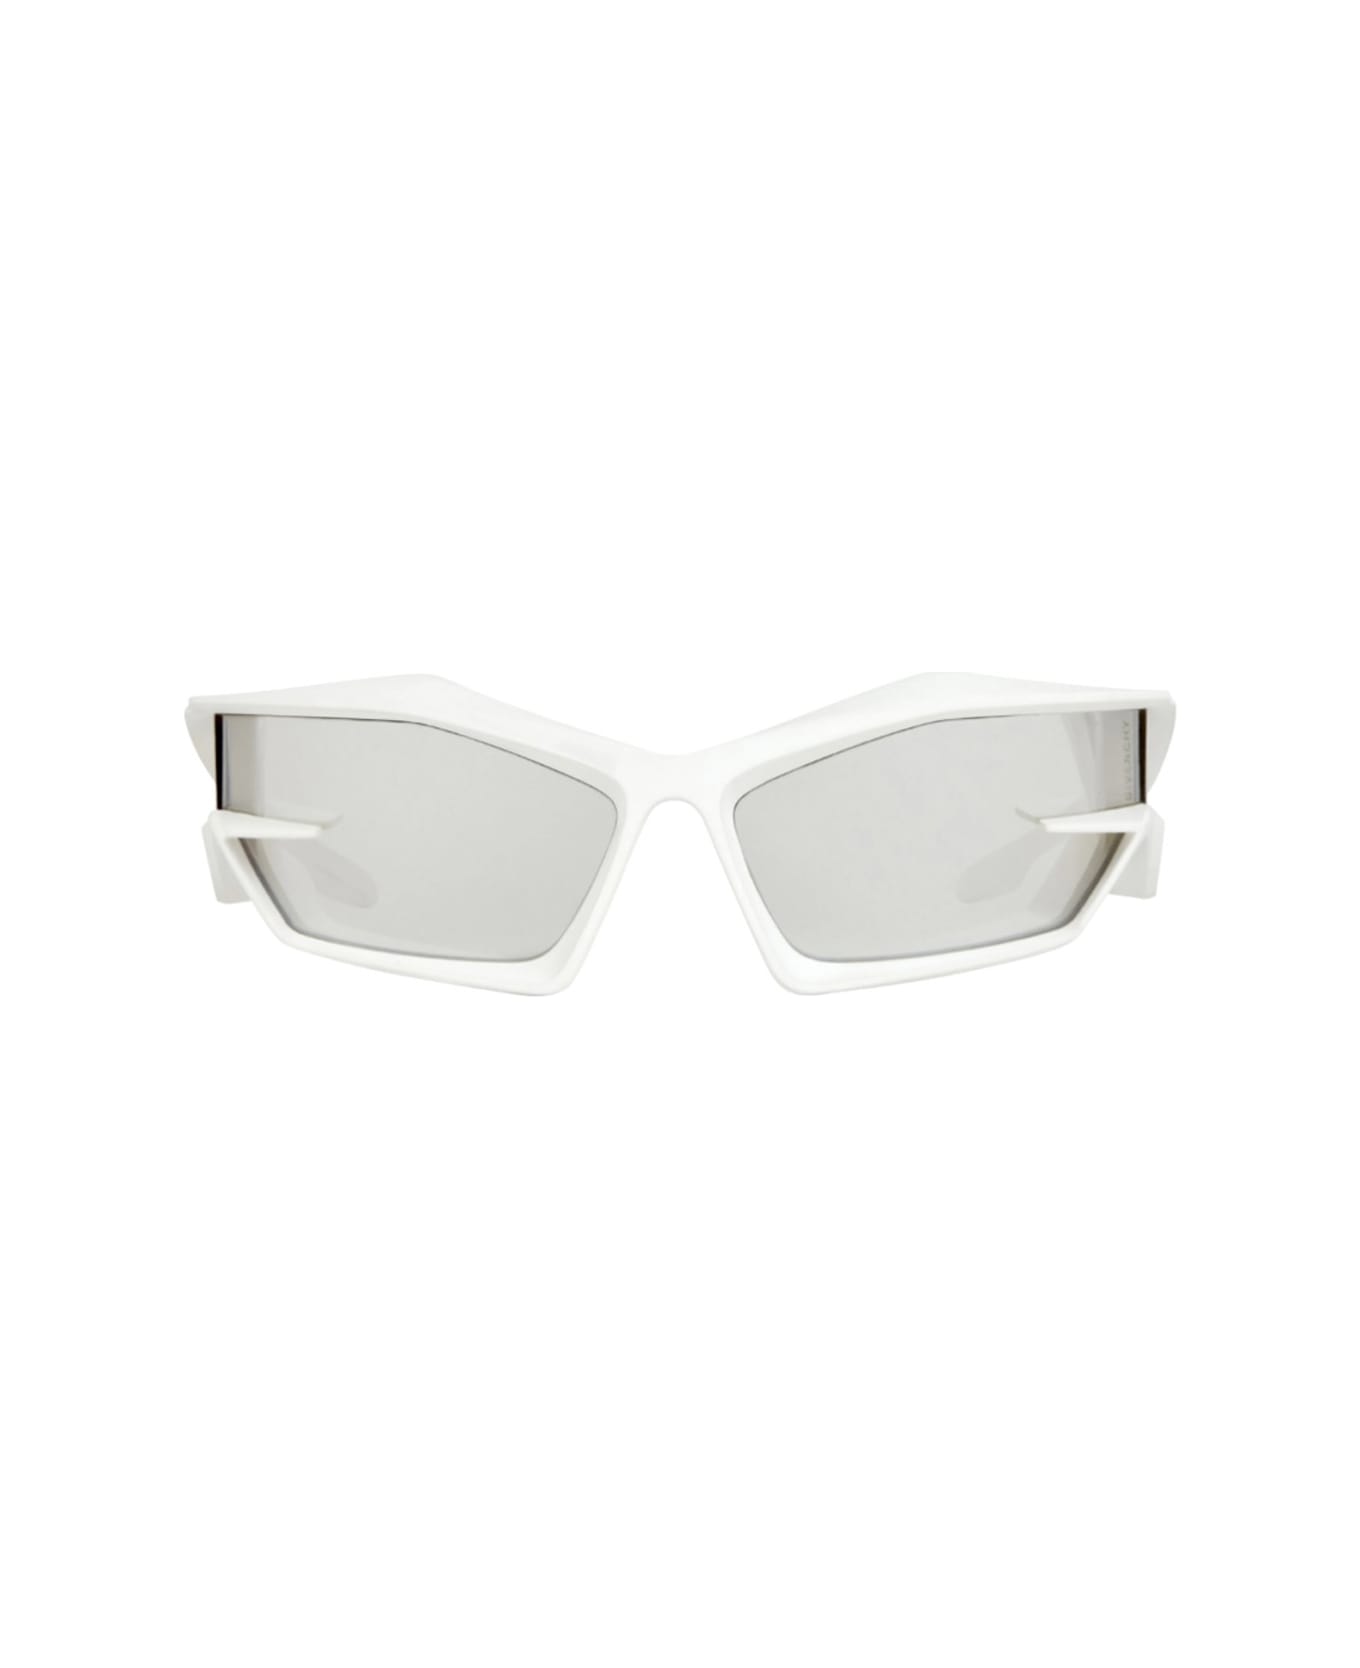 Givenchy Eyewear Gv40049i 21c Sunglasses - Bianco サングラス